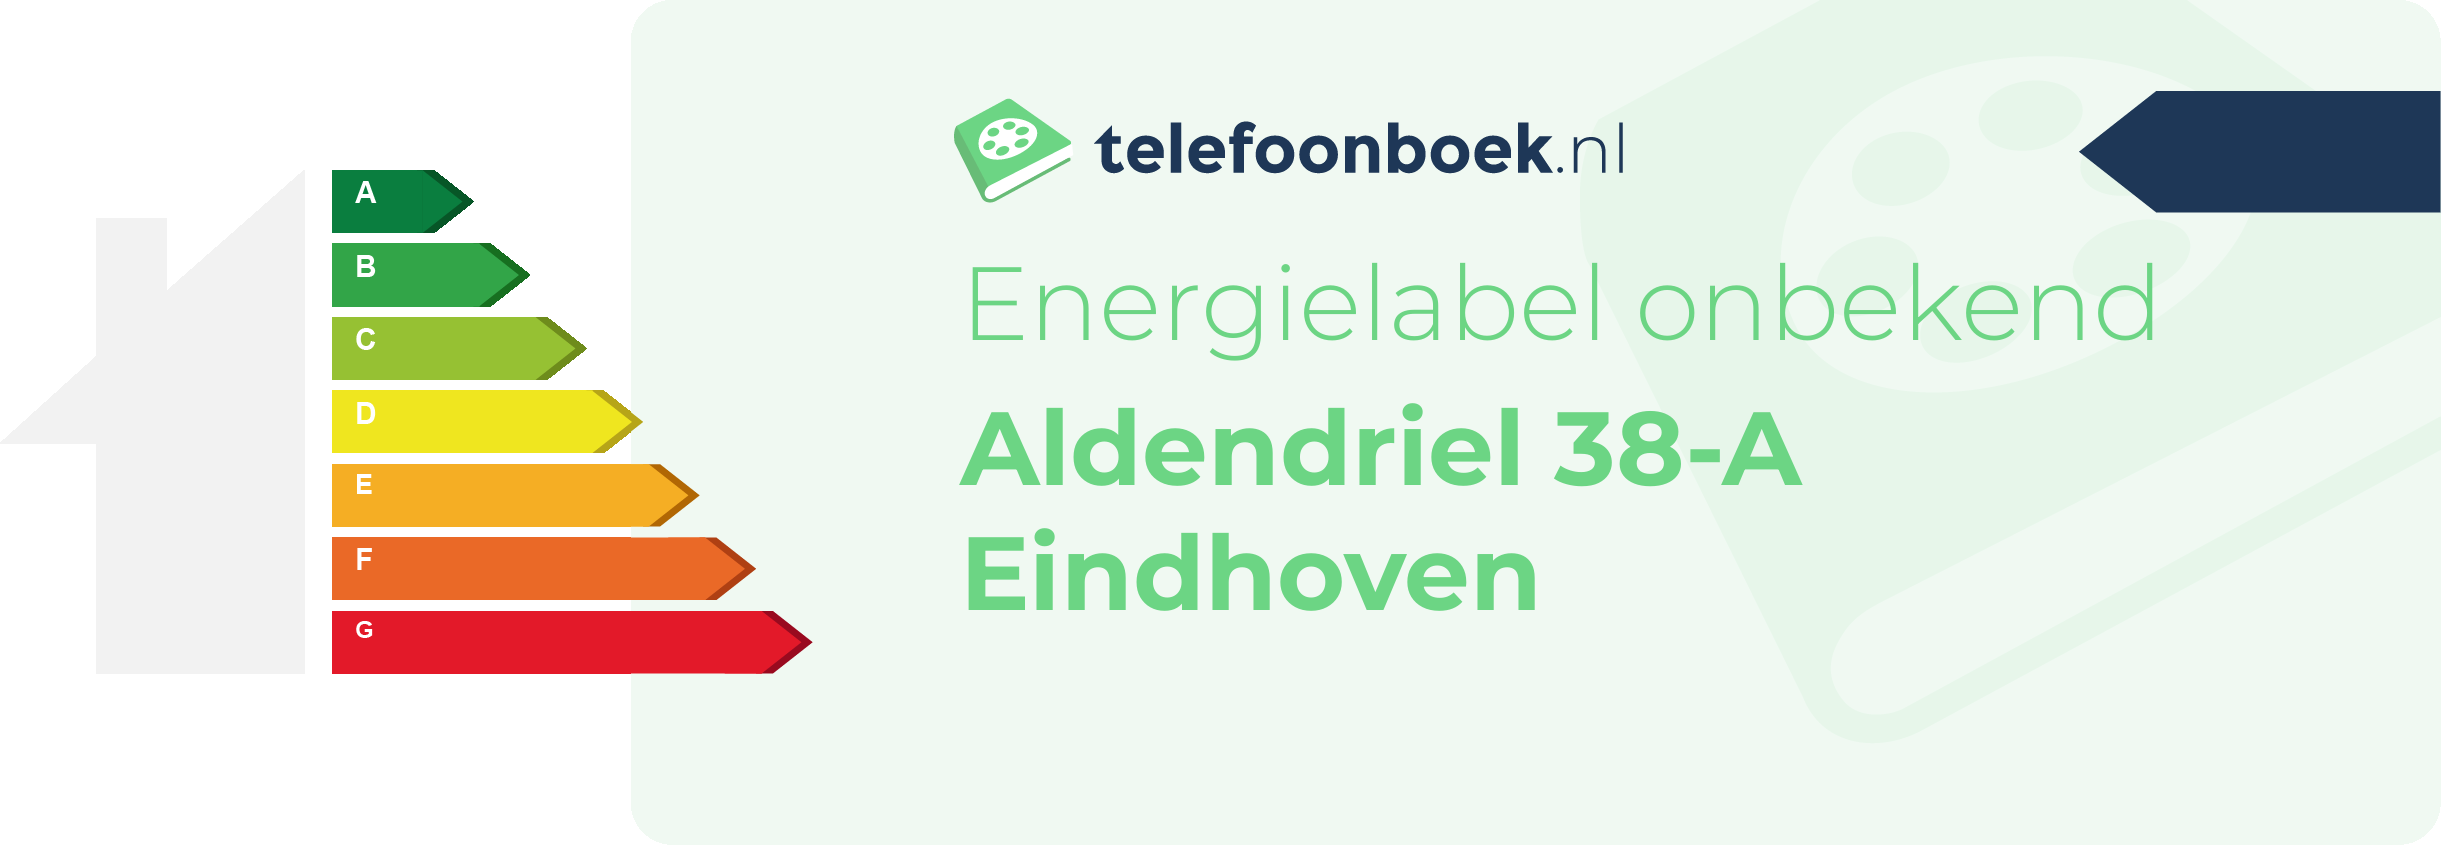 Energielabel Aldendriel 38-A Eindhoven